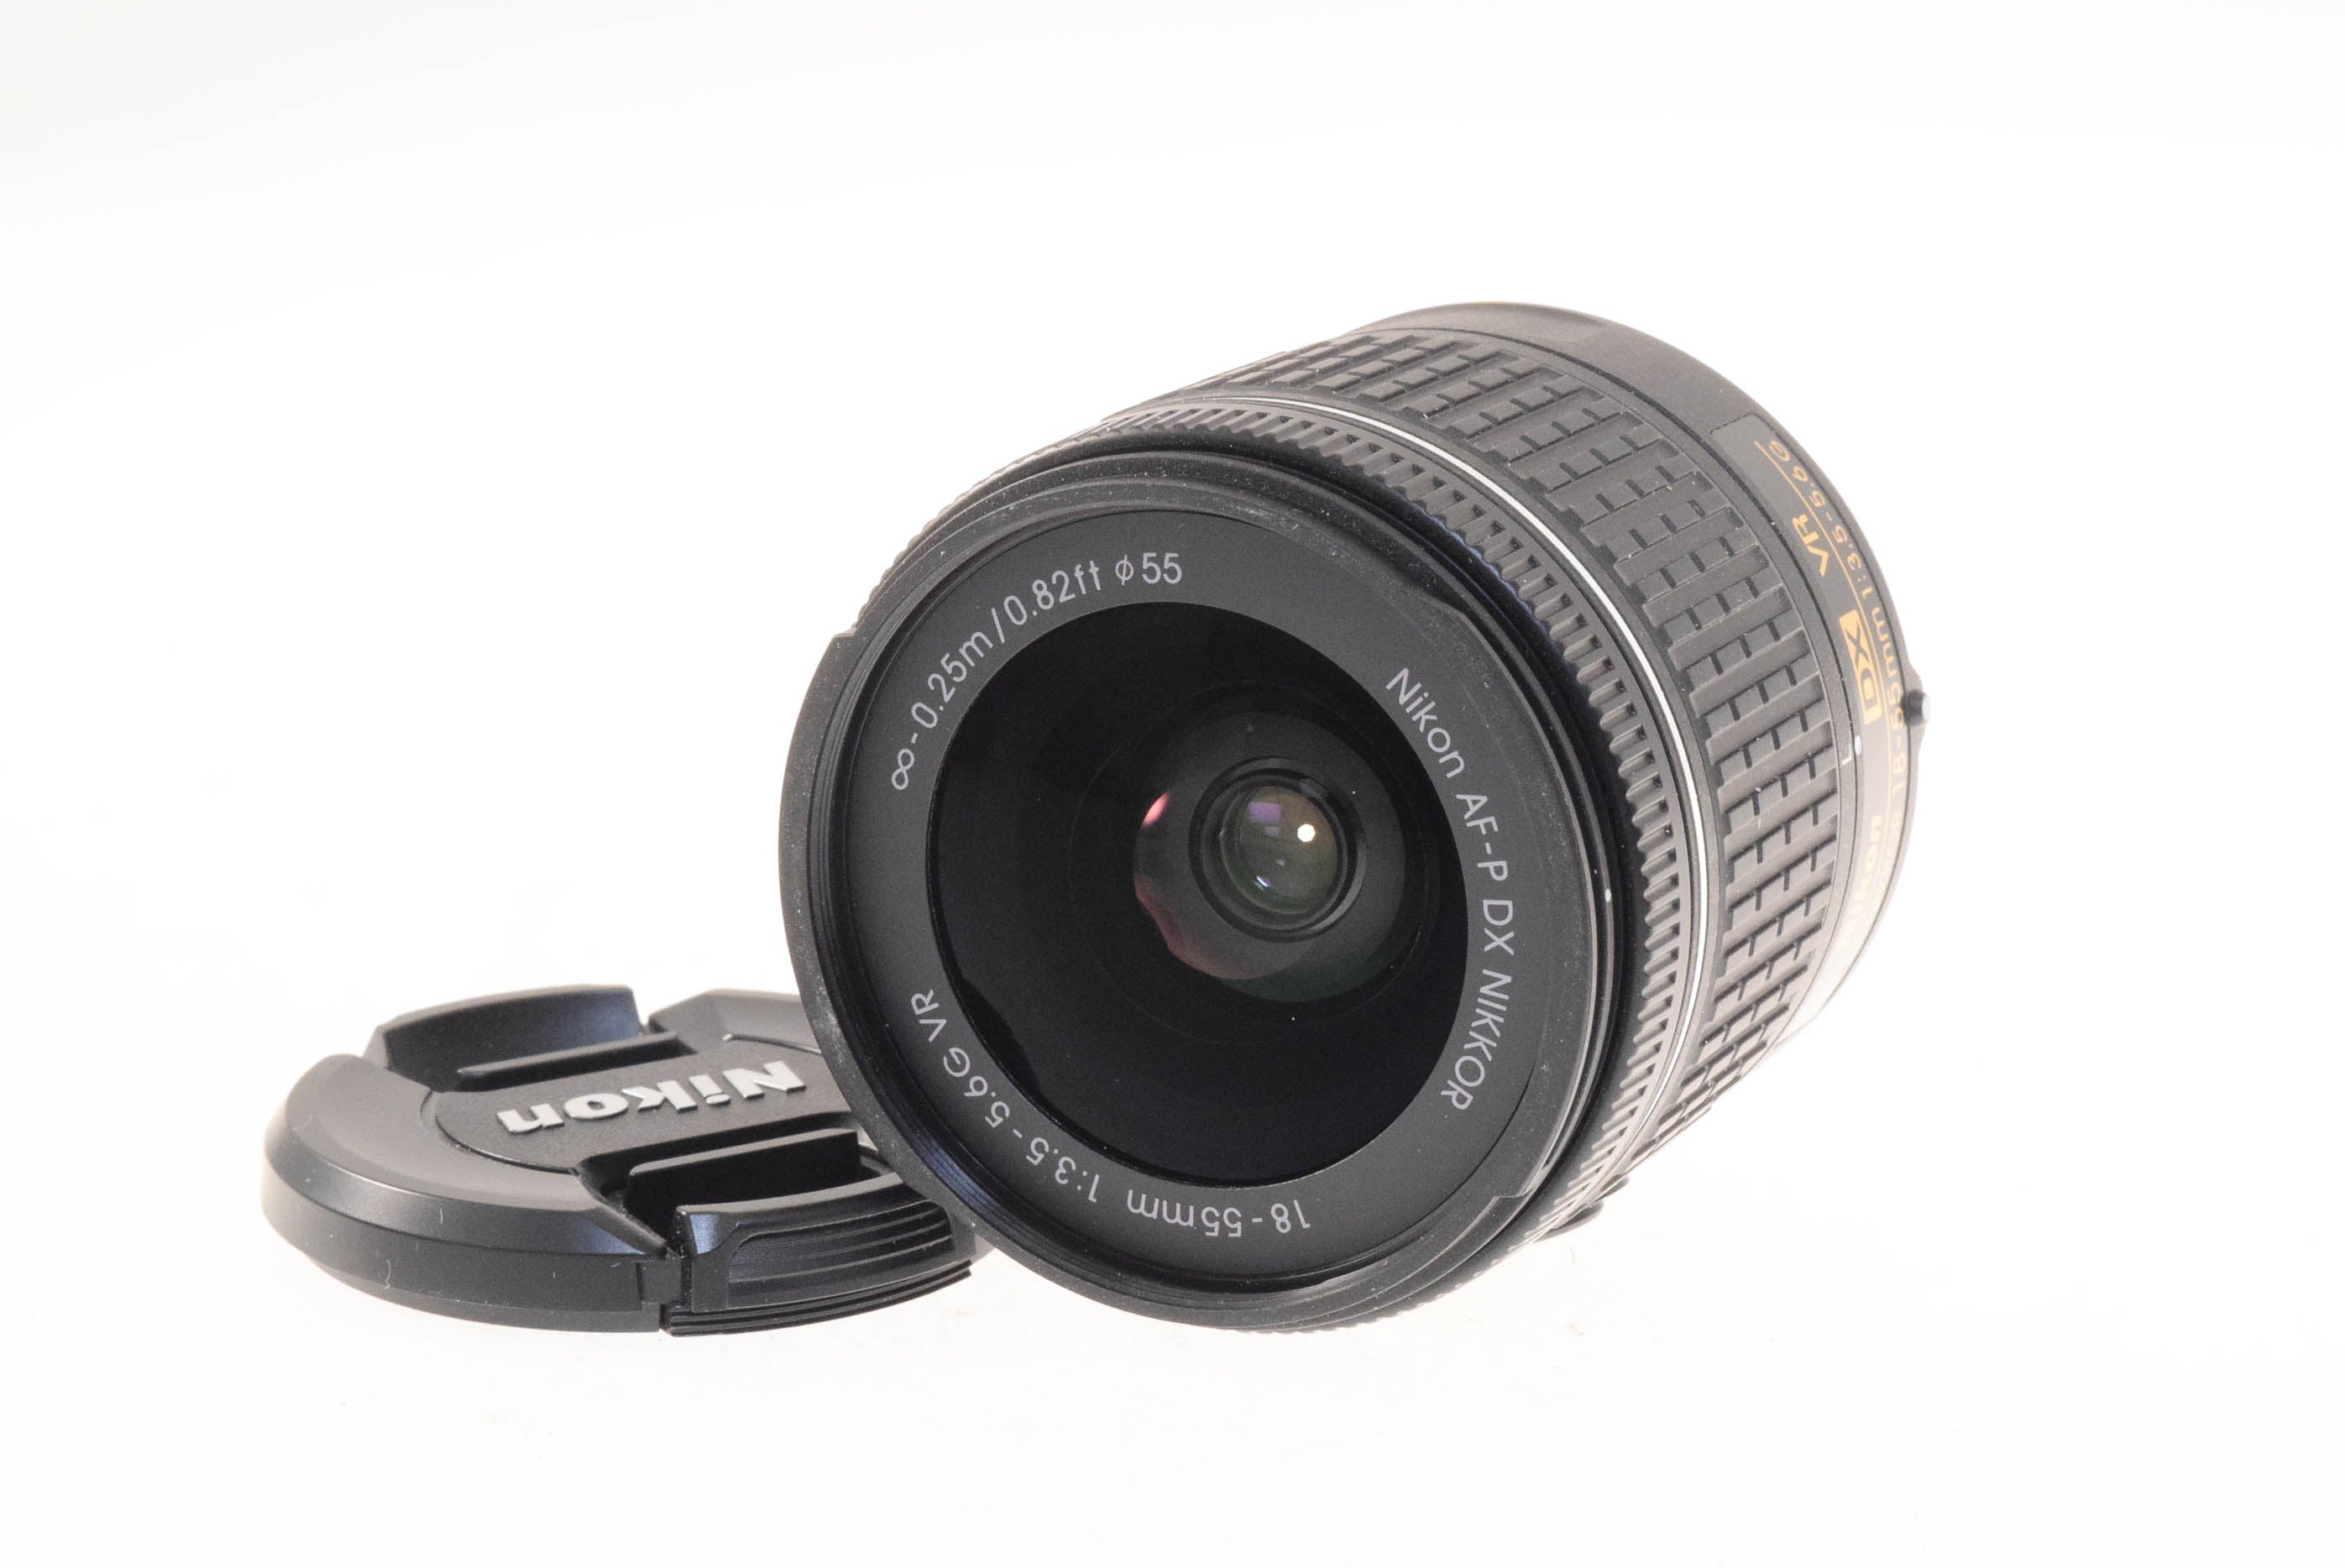 Dodd Camera - NIKON D5600 w/18-55mm f3.5-5.6 G VR & 70-300mm f/4.5